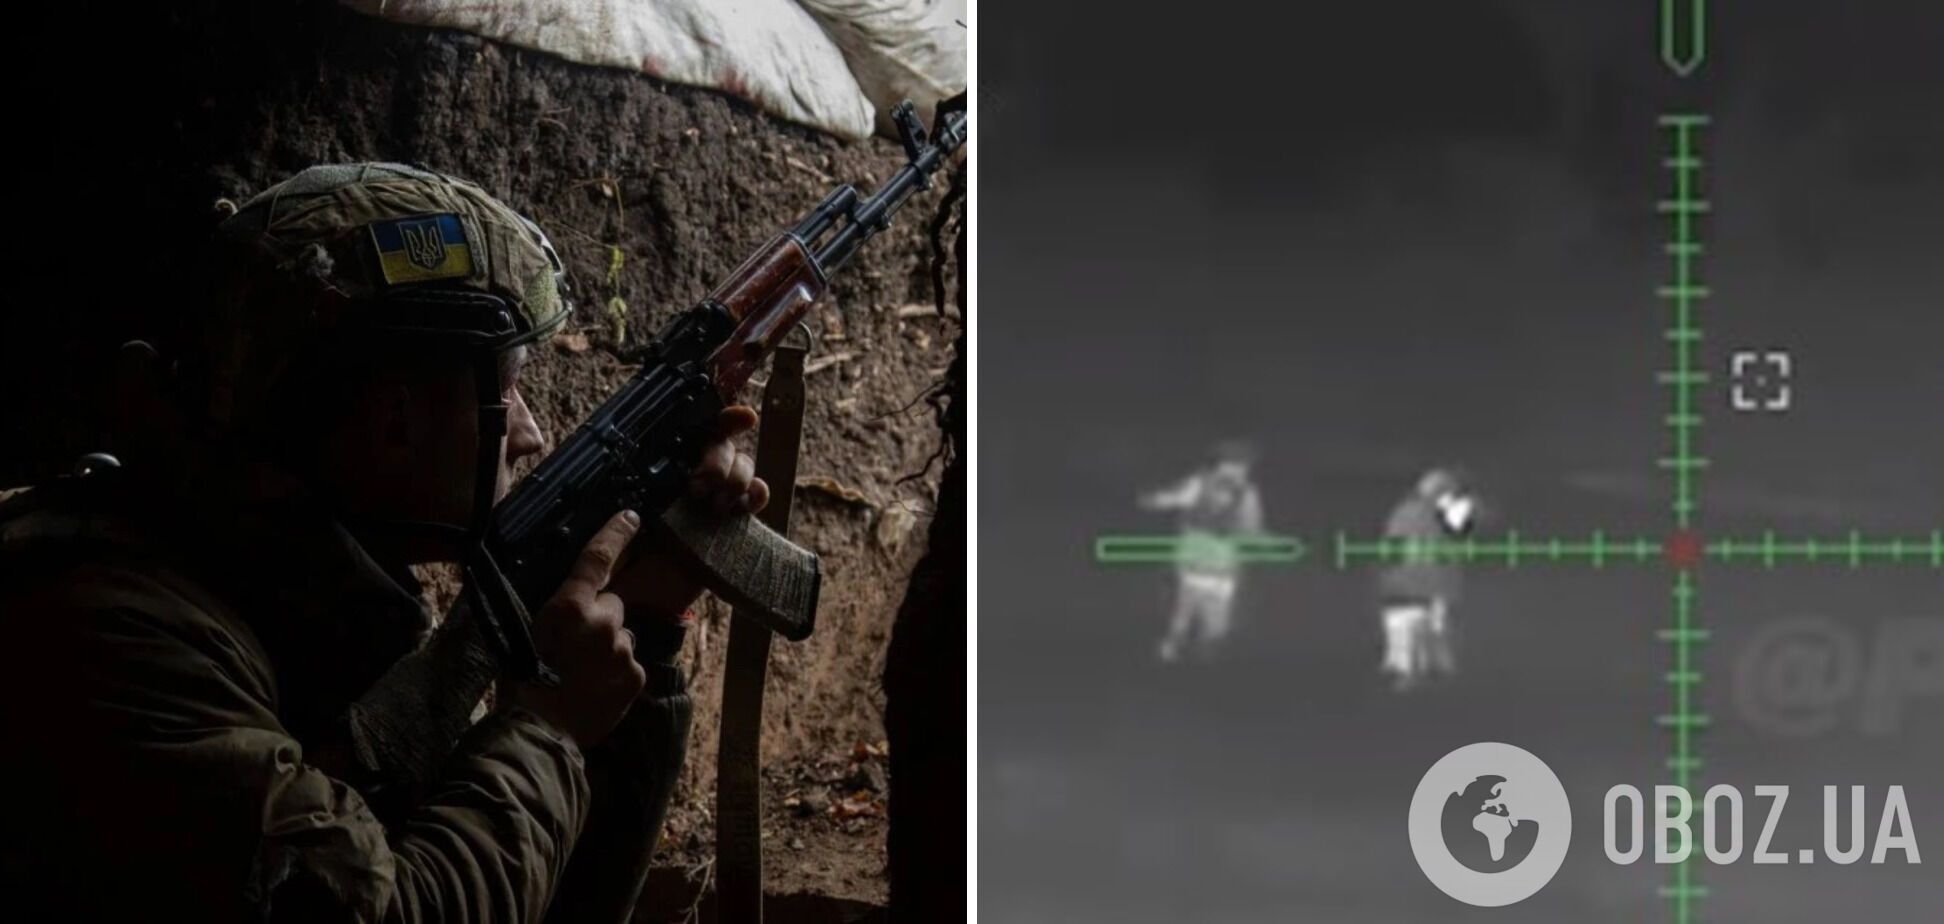 'Блискуча робота': воїн ЗСУ зі звичайної гвинтівки ліквідував 15 загарбників, які йшли на штурм. Відео